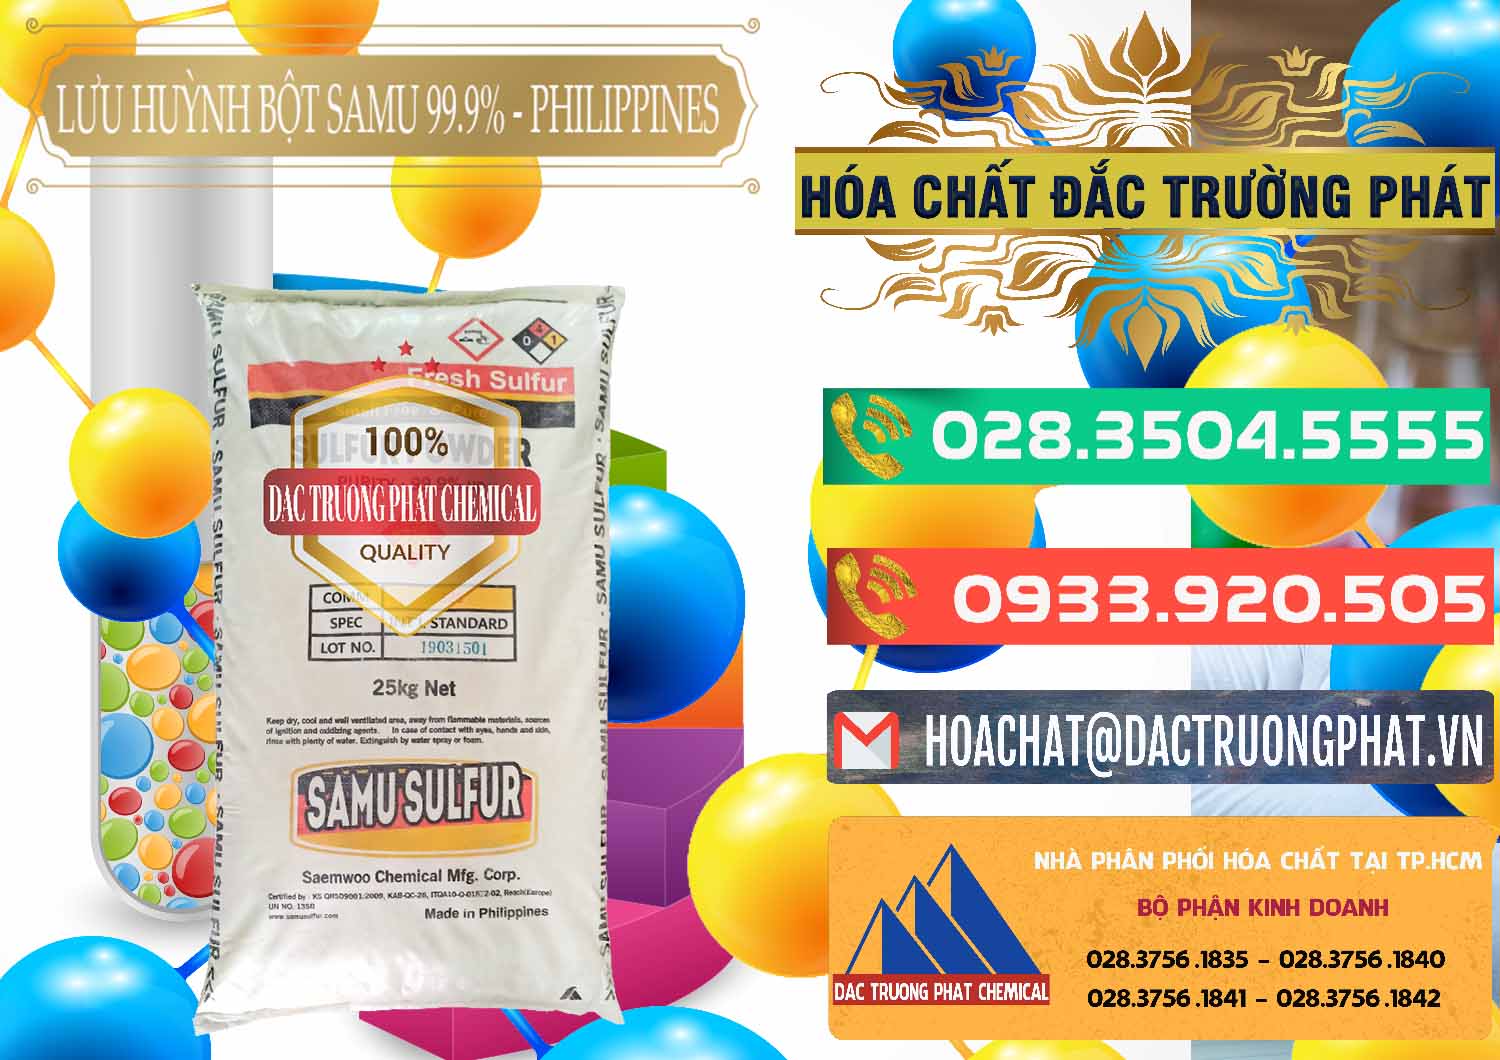 Công ty chuyên bán _ cung ứng Lưu huỳnh Bột - Sulfur Powder Samu Philippines - 0201 - Công ty cung cấp và phân phối hóa chất tại TP.HCM - congtyhoachat.com.vn